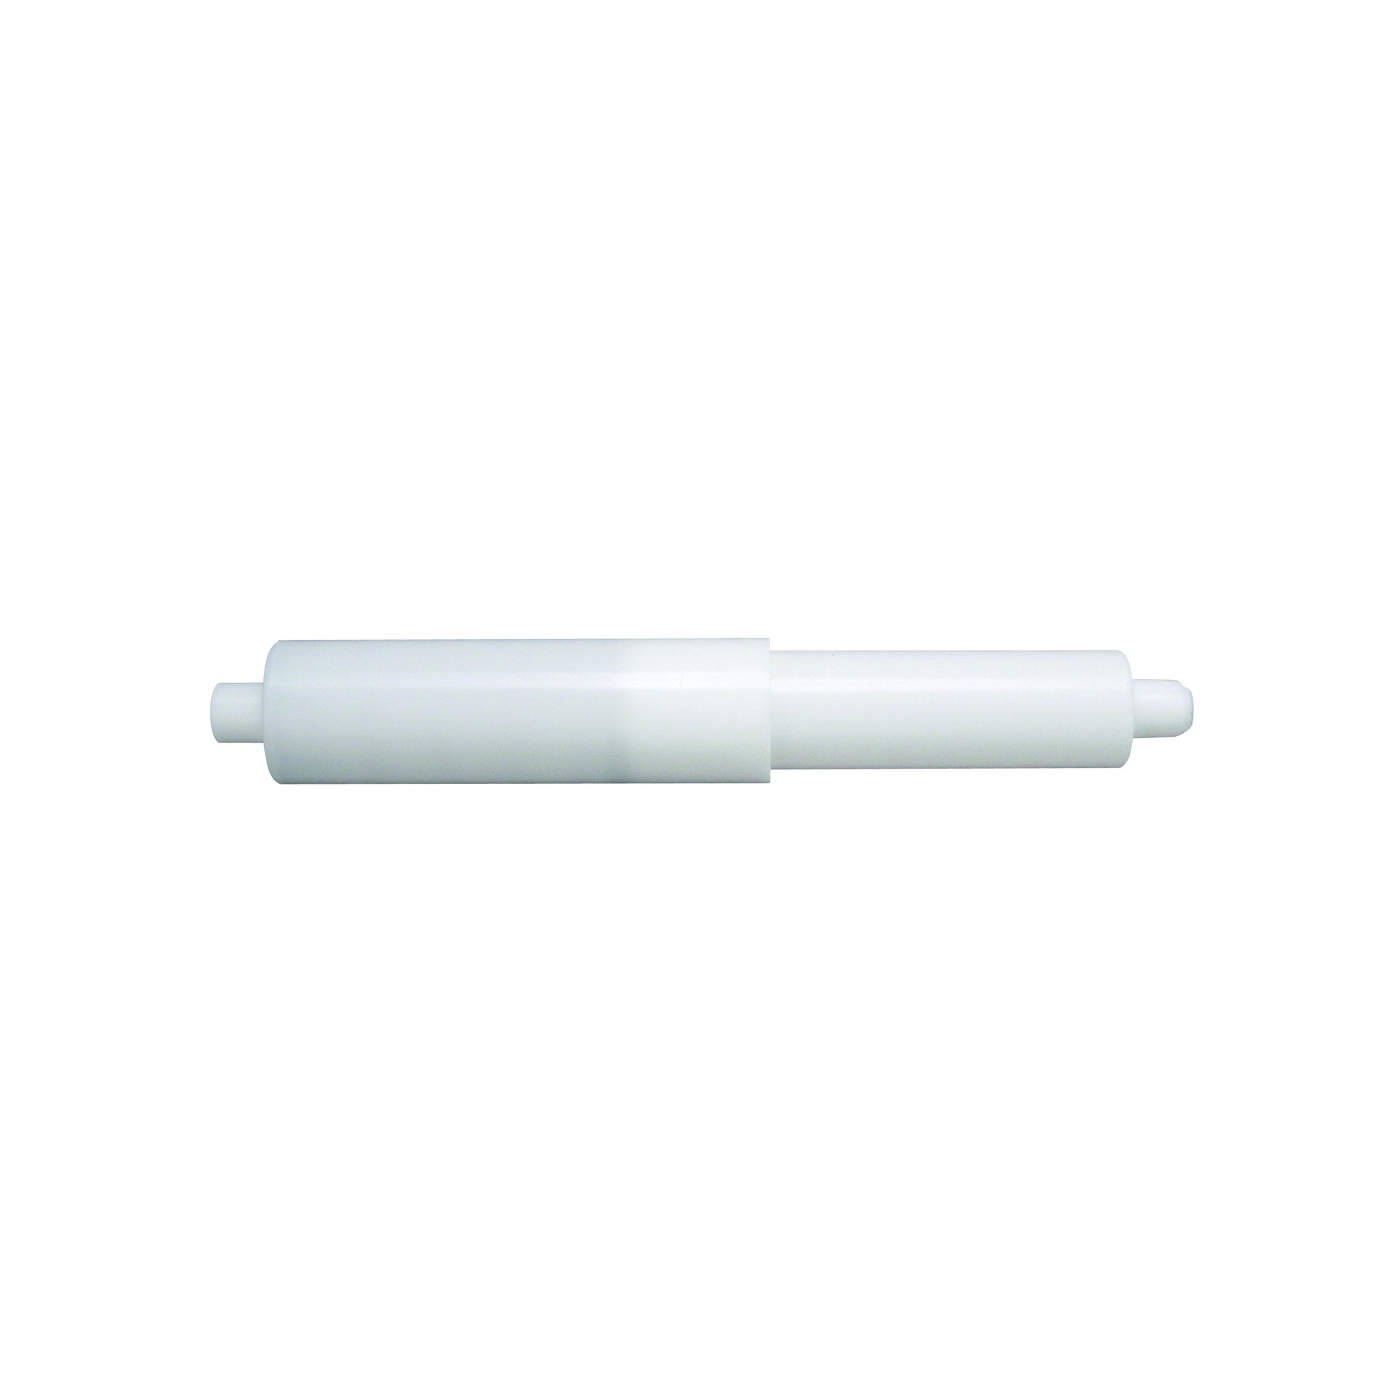 PP835-35 Toilet Paper Roller, Plastic, White